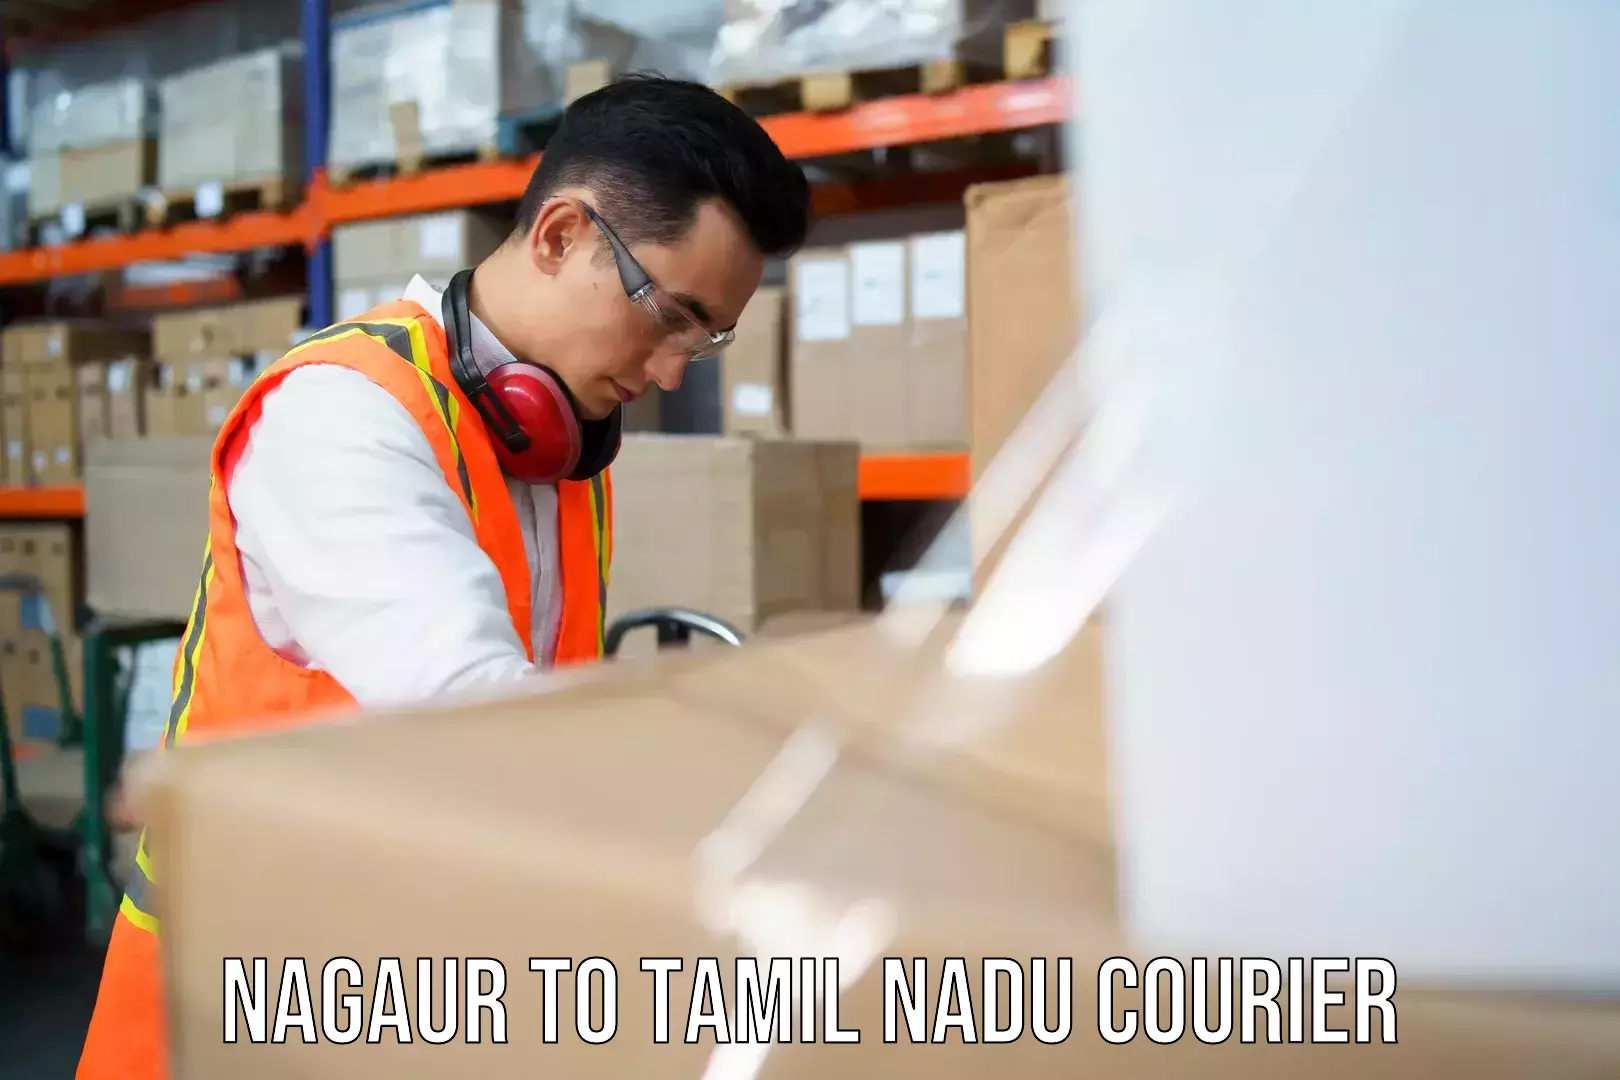 Secure packaging in Nagaur to Tamil Nadu